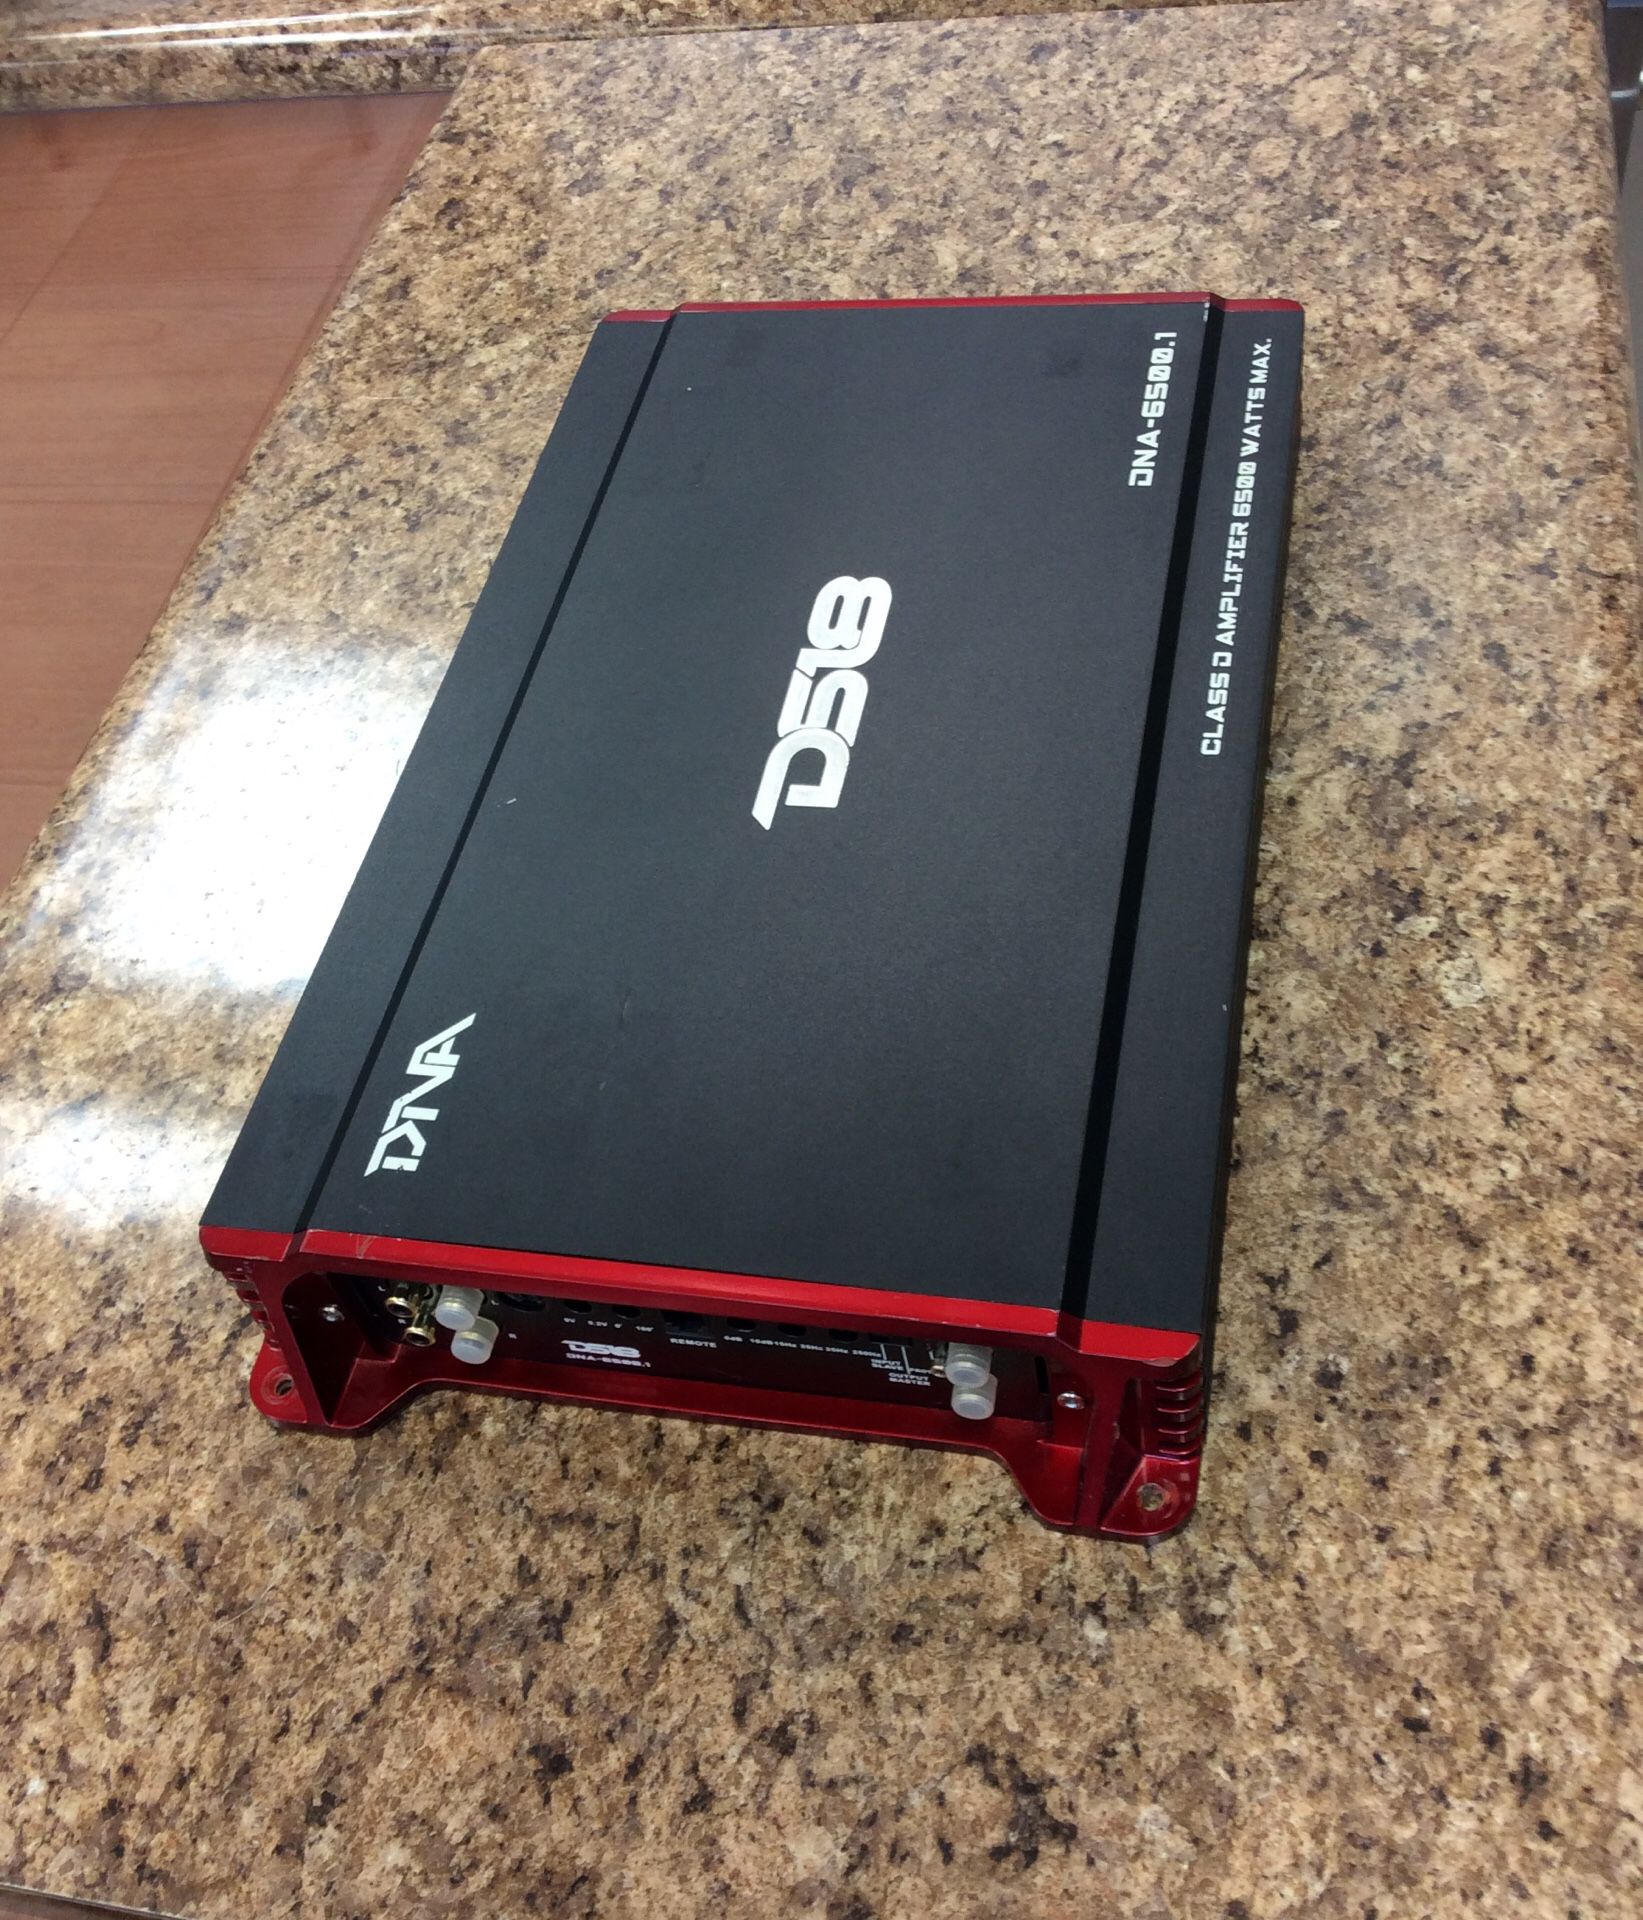 Dna - 6500.1 class d amplifier 6500 watts max